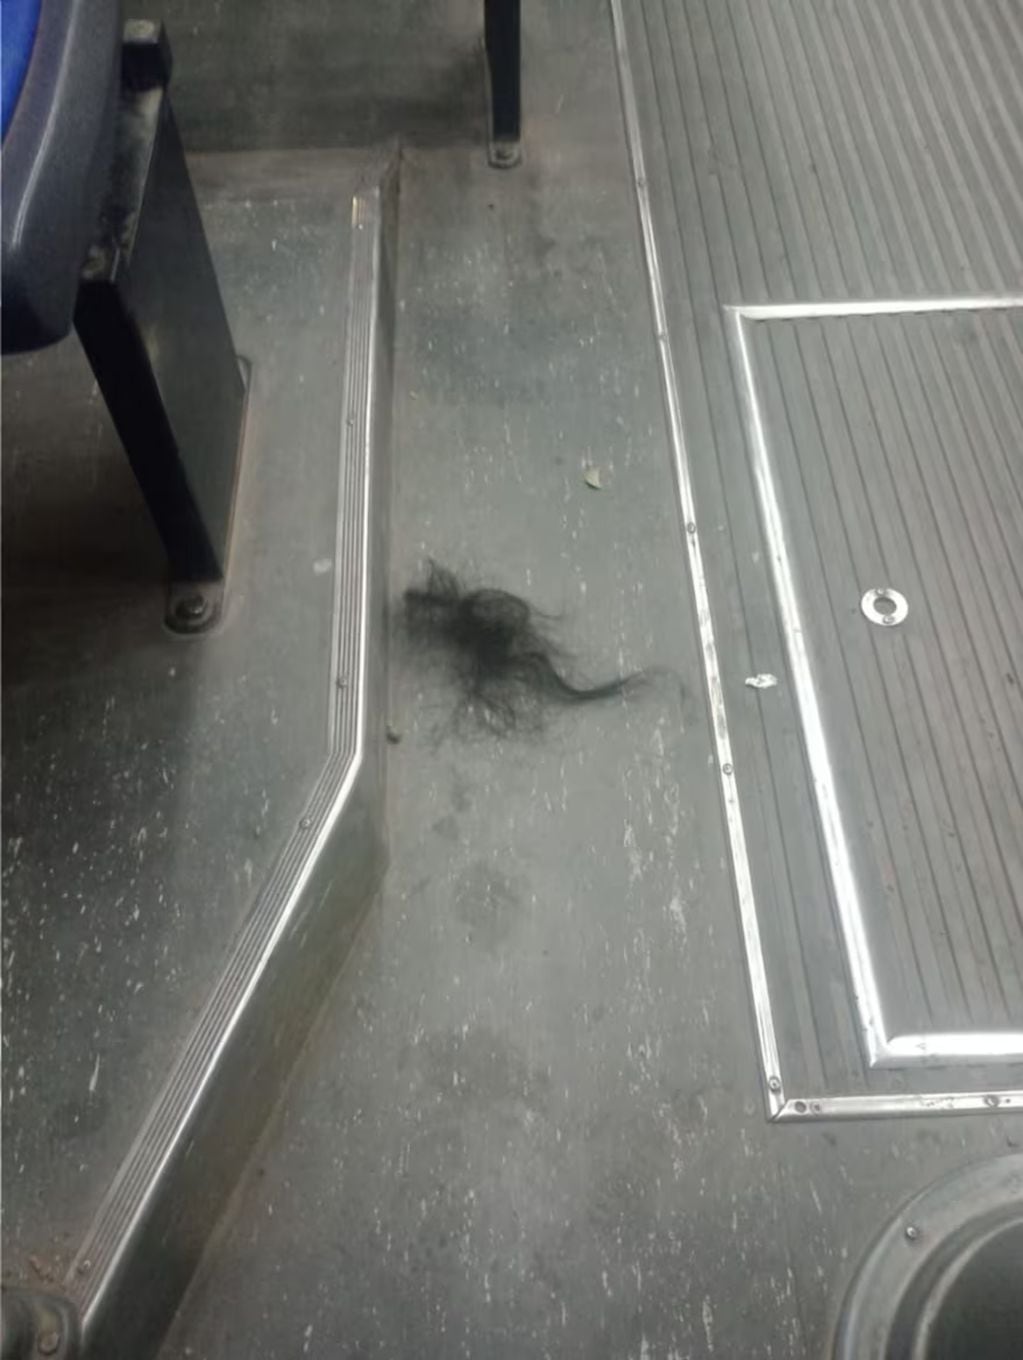 La agresora le arrancó un importante mechón de pelo a la mujer y también el cuero cabelludo. Foto: Gentileza 0221